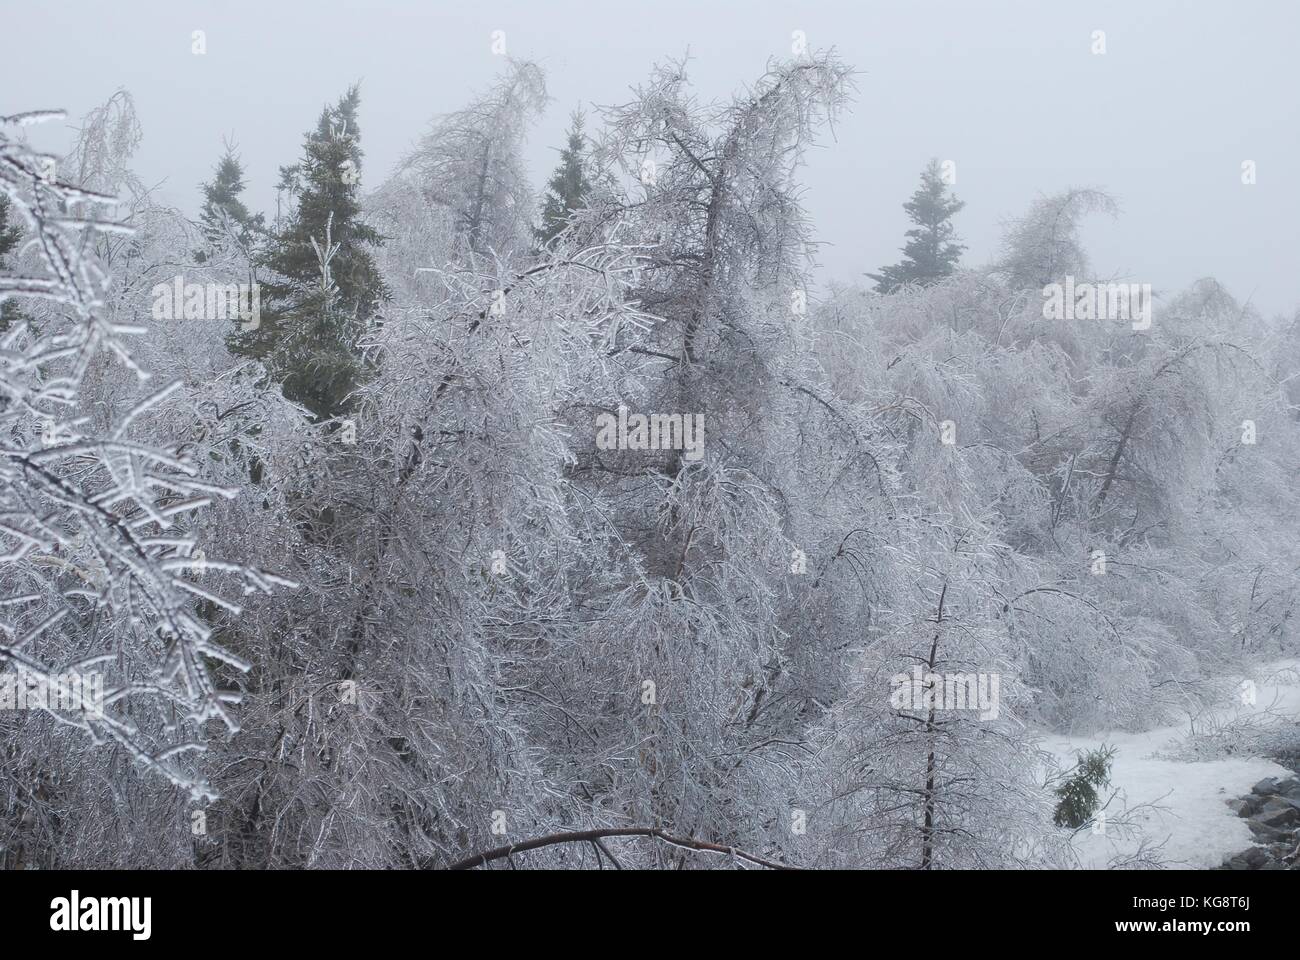 Ice Storm in Conception Bay South, NL, Kanada. Schwere Eisanhäufung auf Bäumen. Bäumen beugte sich aus dem Gewicht der Gewicht. Einfrieren Nebel in der Luft. Stockfoto